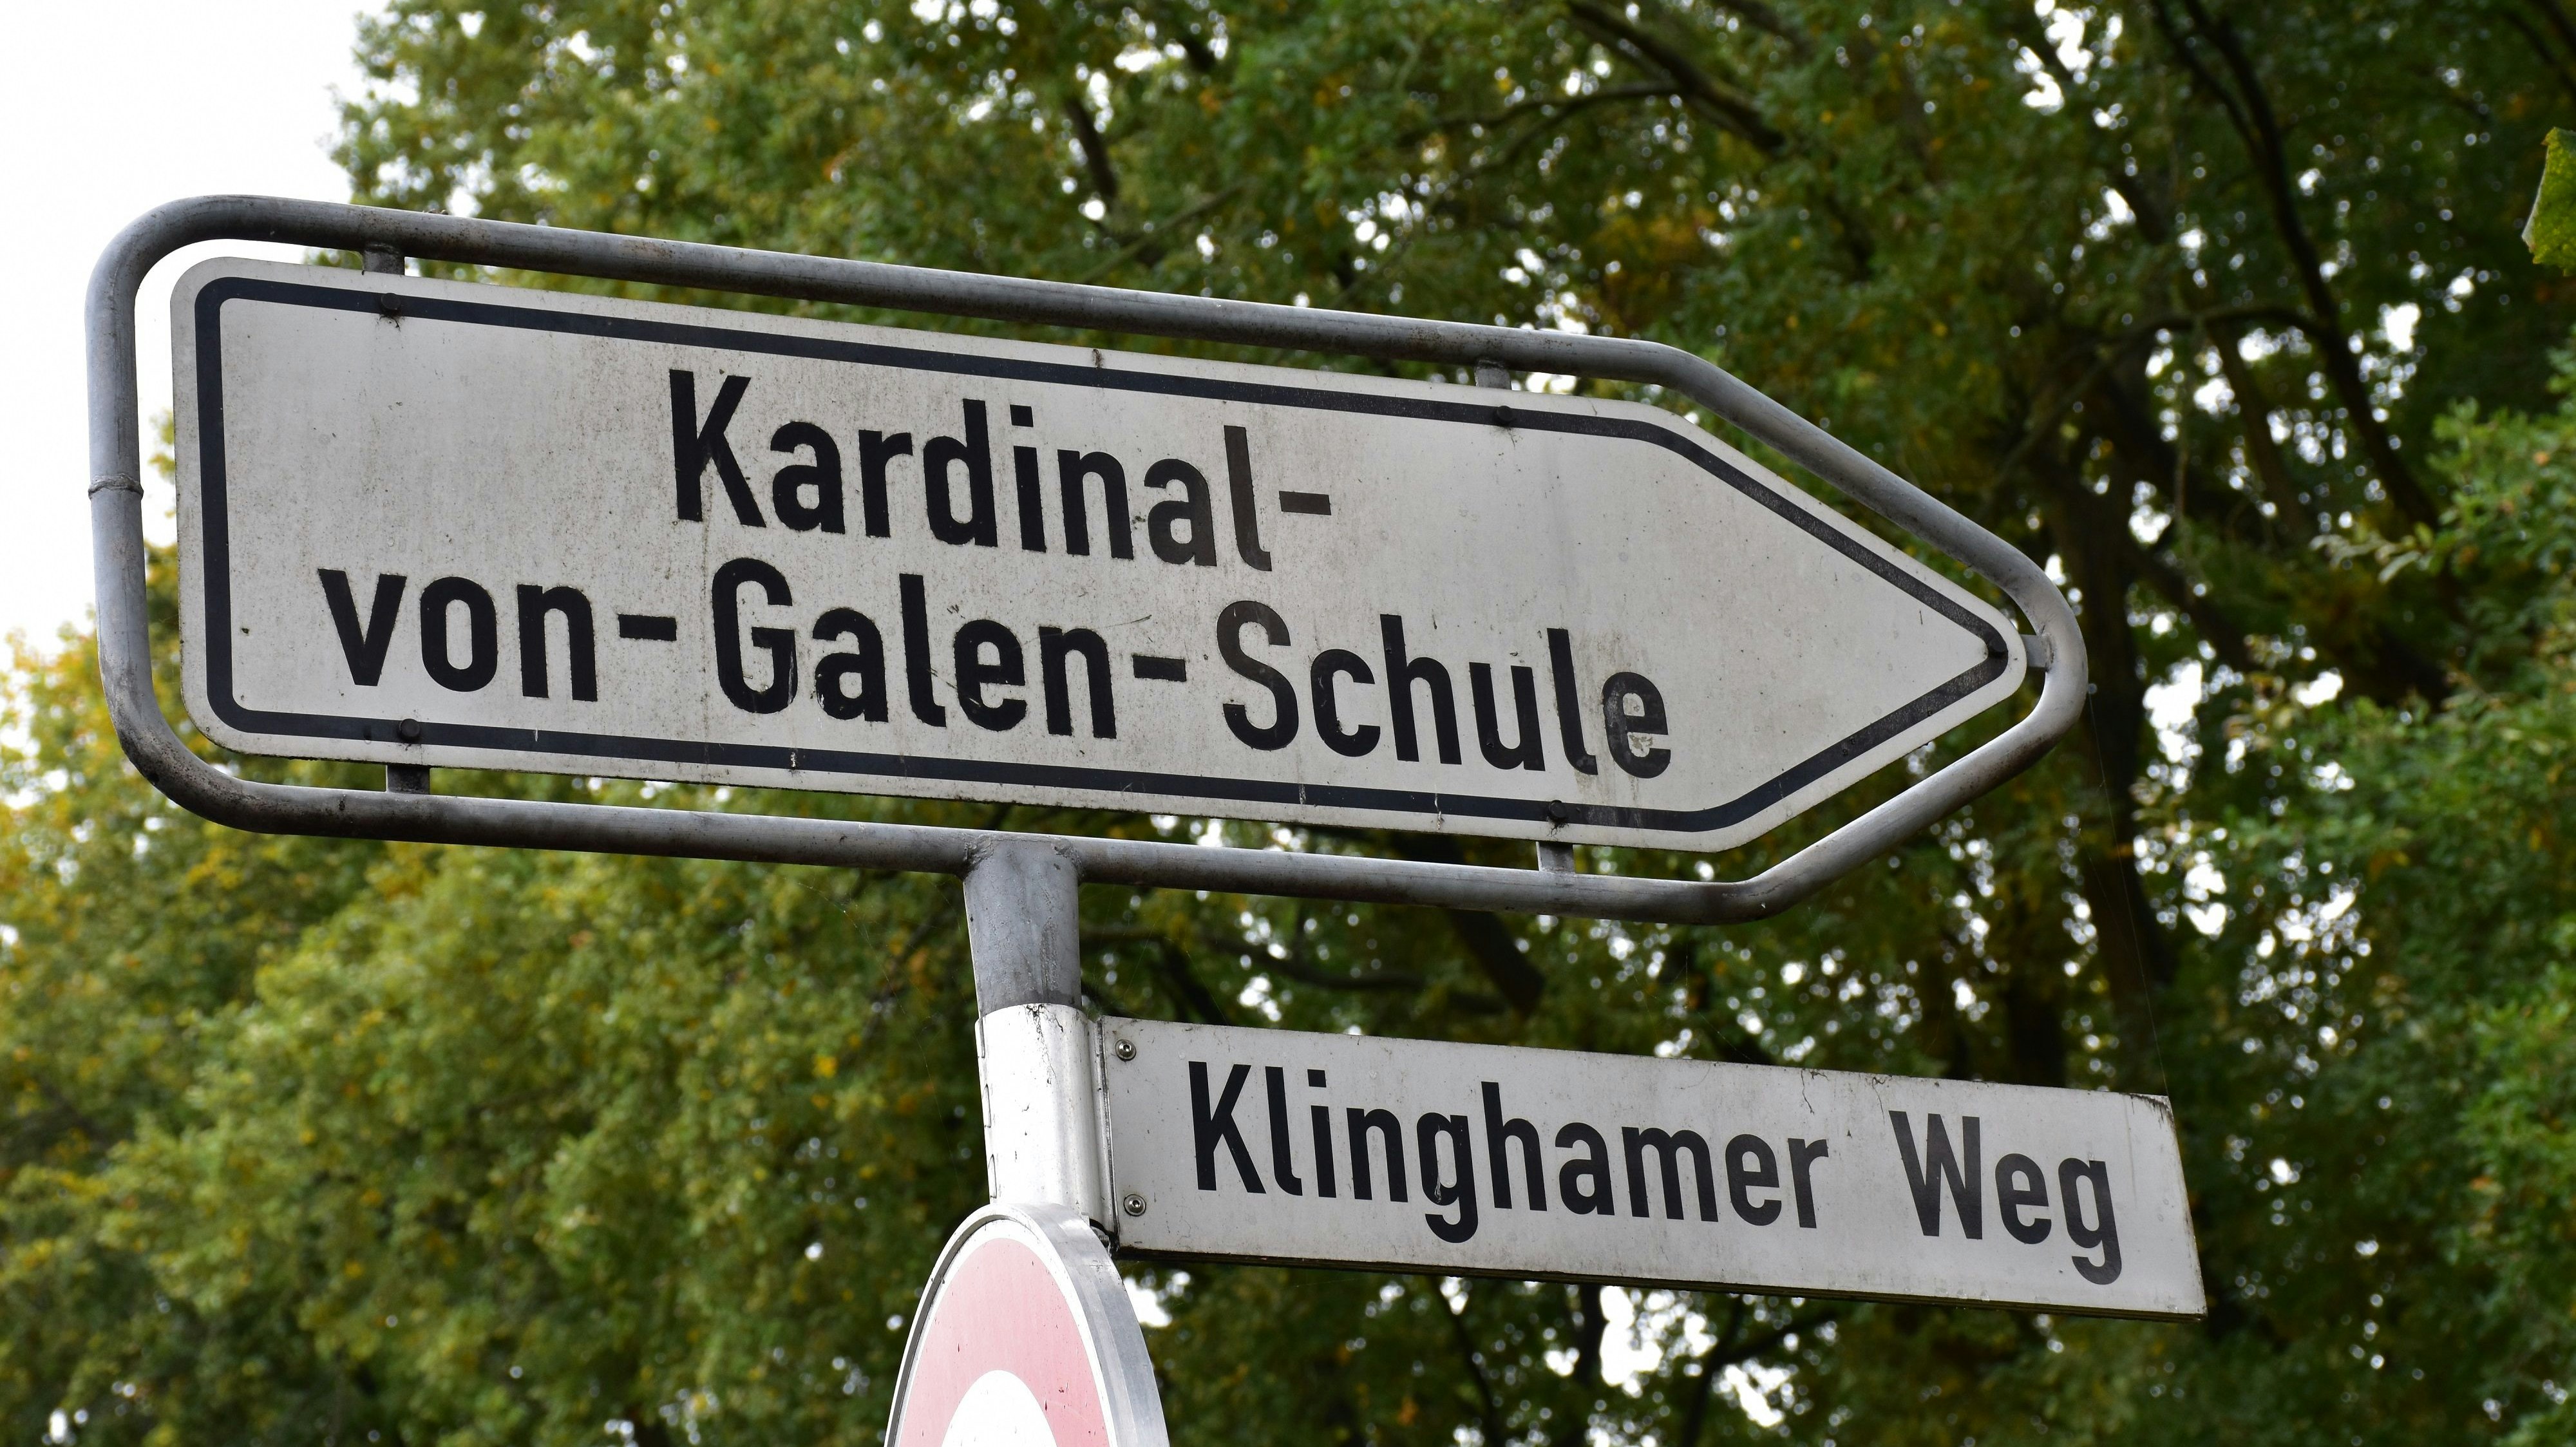 Hier geht's rein: Die Kardinal-von-Galen-Schule Dinklage liegt am Klinghamer Weg. Foto: Böckmann